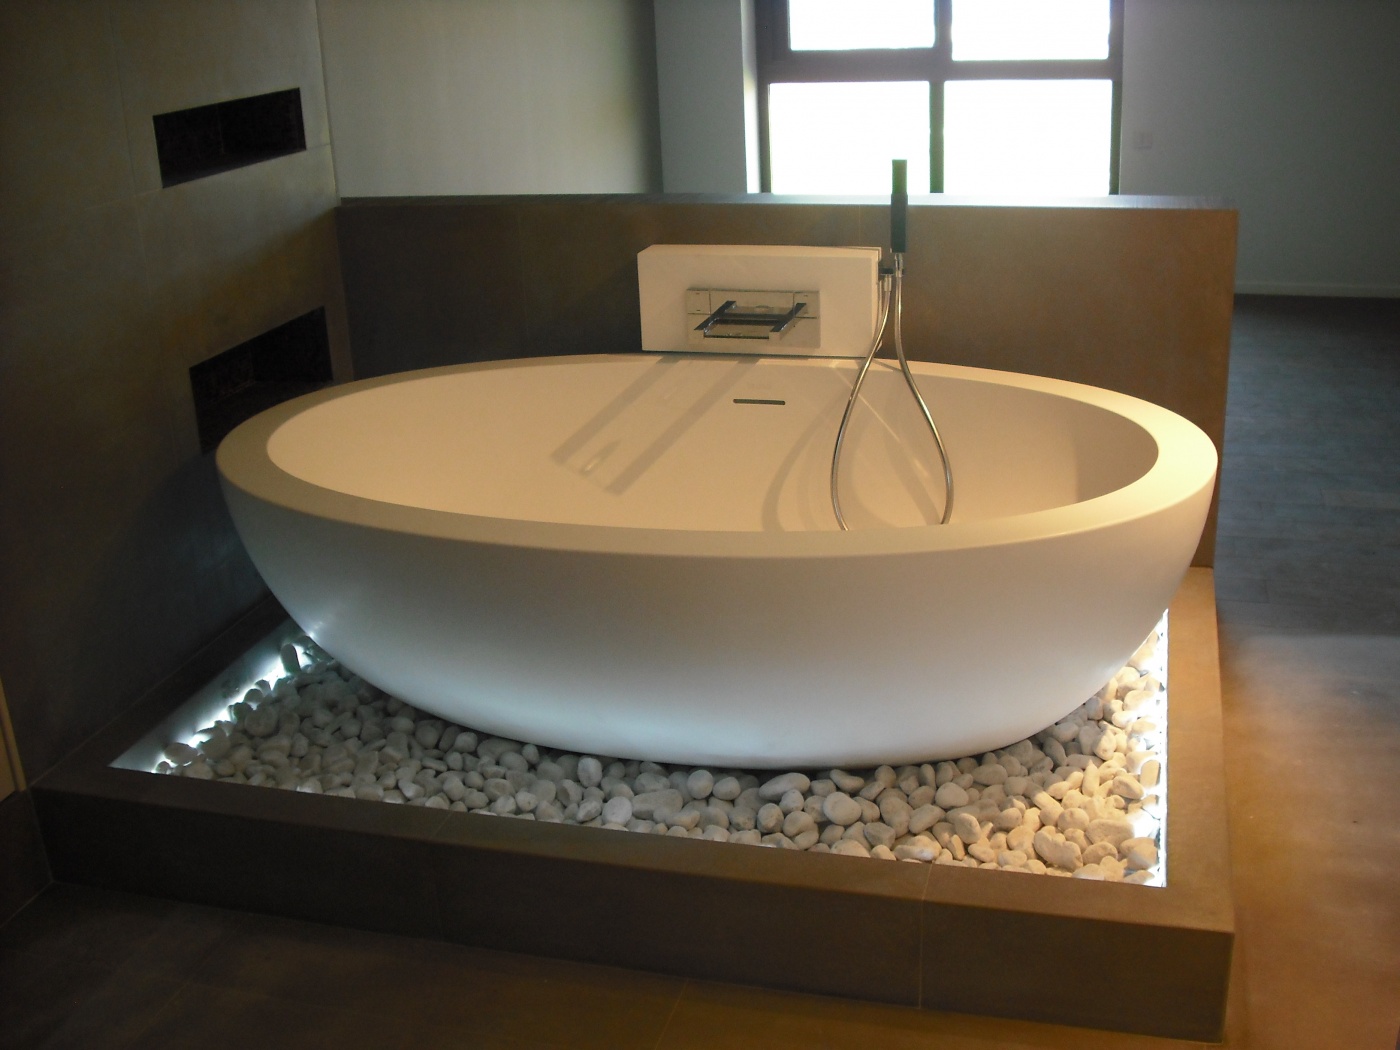 Quartzite Salle de bain design en pierre Gris Barcelone
Baignoire Boffi